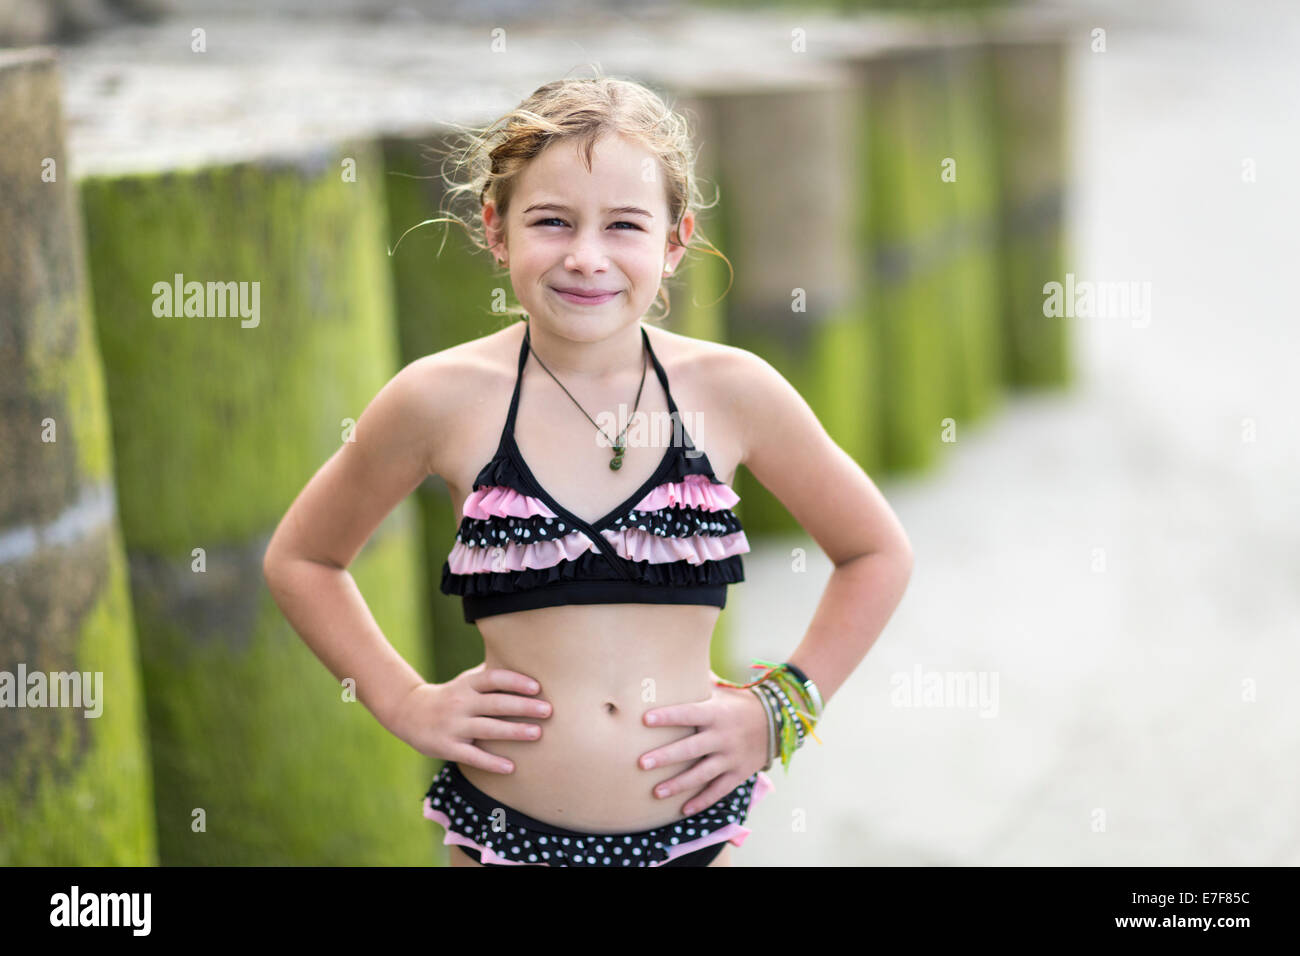 6 7 jahre mädchen bikini -Fotos und -Bildmaterial in hoher Auflösung – Alamy